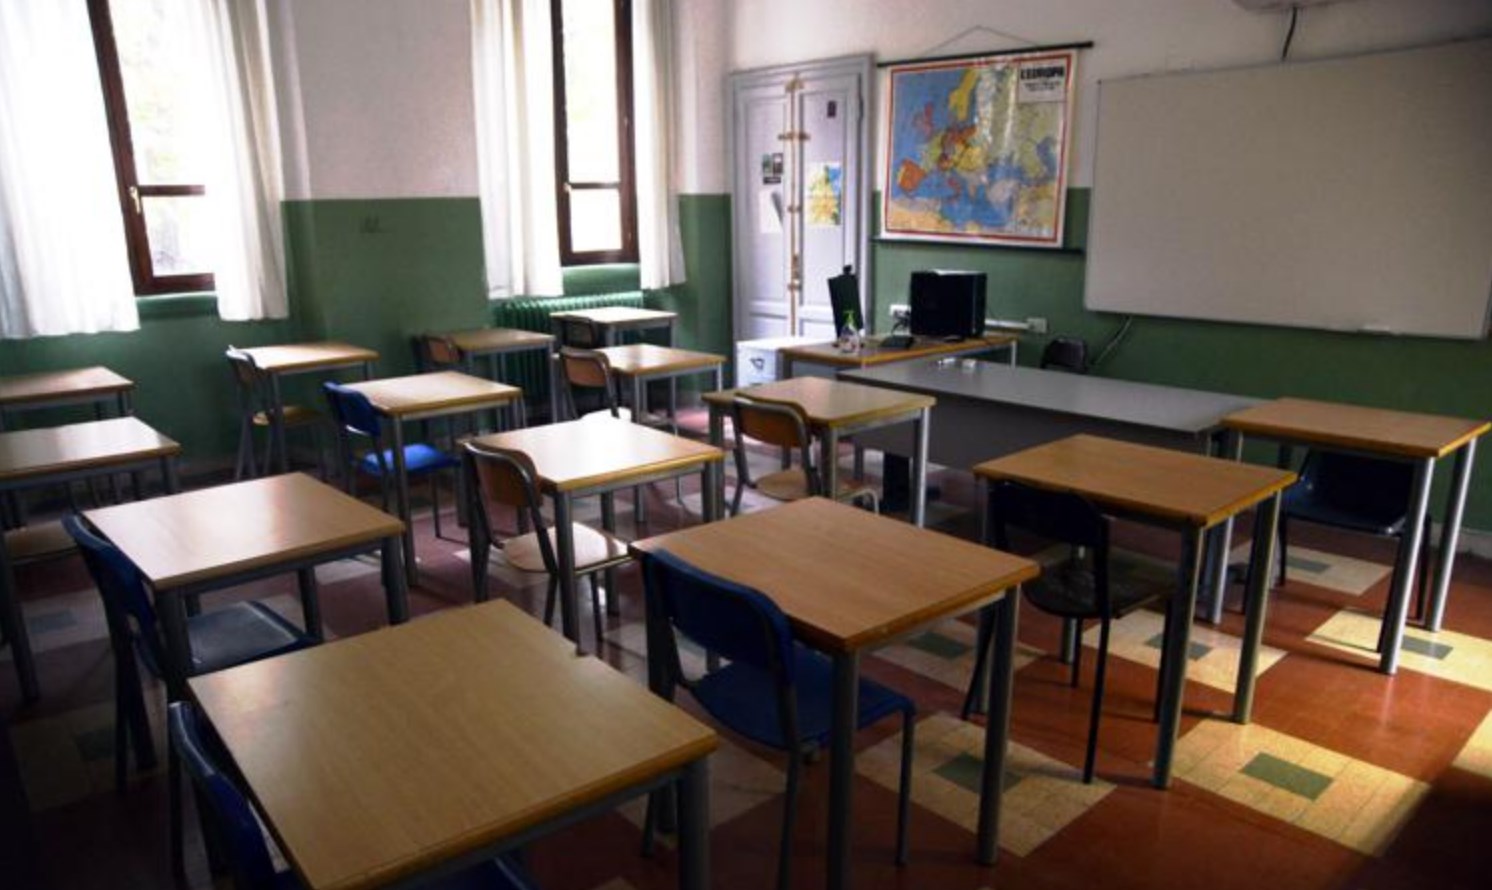 Allerta Meteo, scuole chiuse in diversi comuni della Campania: ecco dove